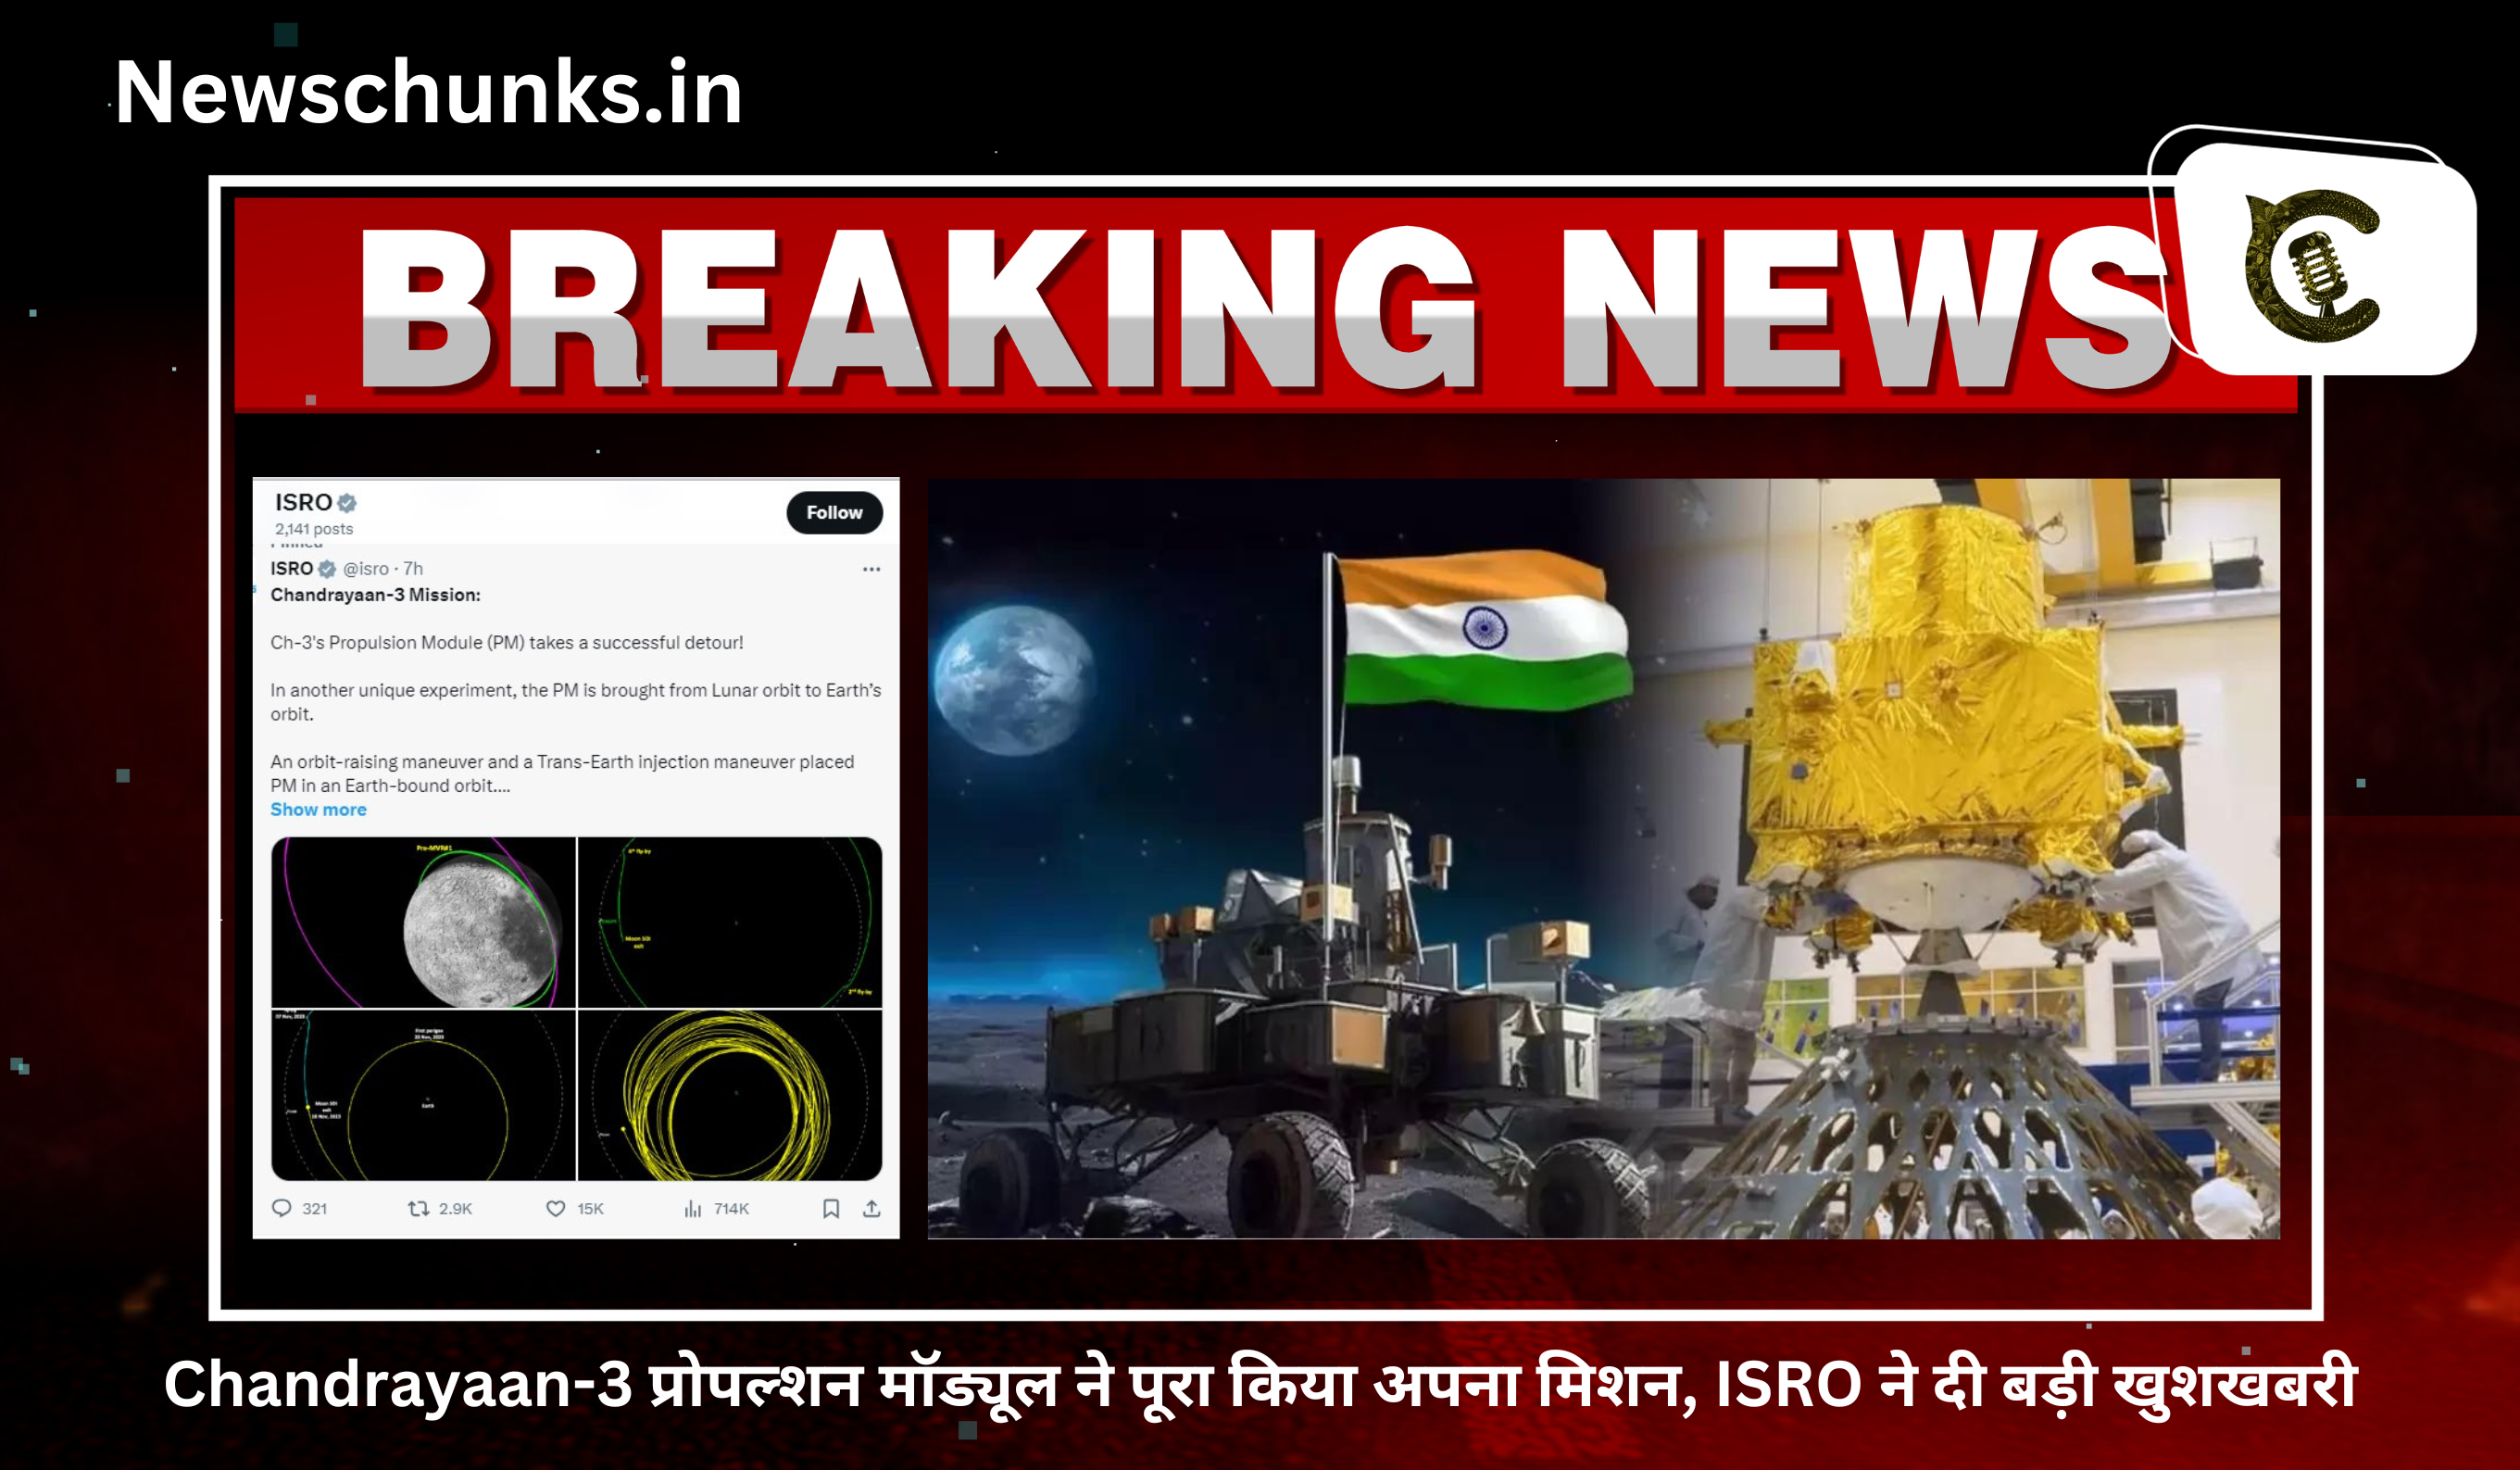 Ch-3's Propulsion Module takes a successful detour!: Chandrayaan-3 प्रोपल्शन मॉड्यूल ने पूरा किया अपना मिशन, ISRO ने दी बड़ी खुशखबरी